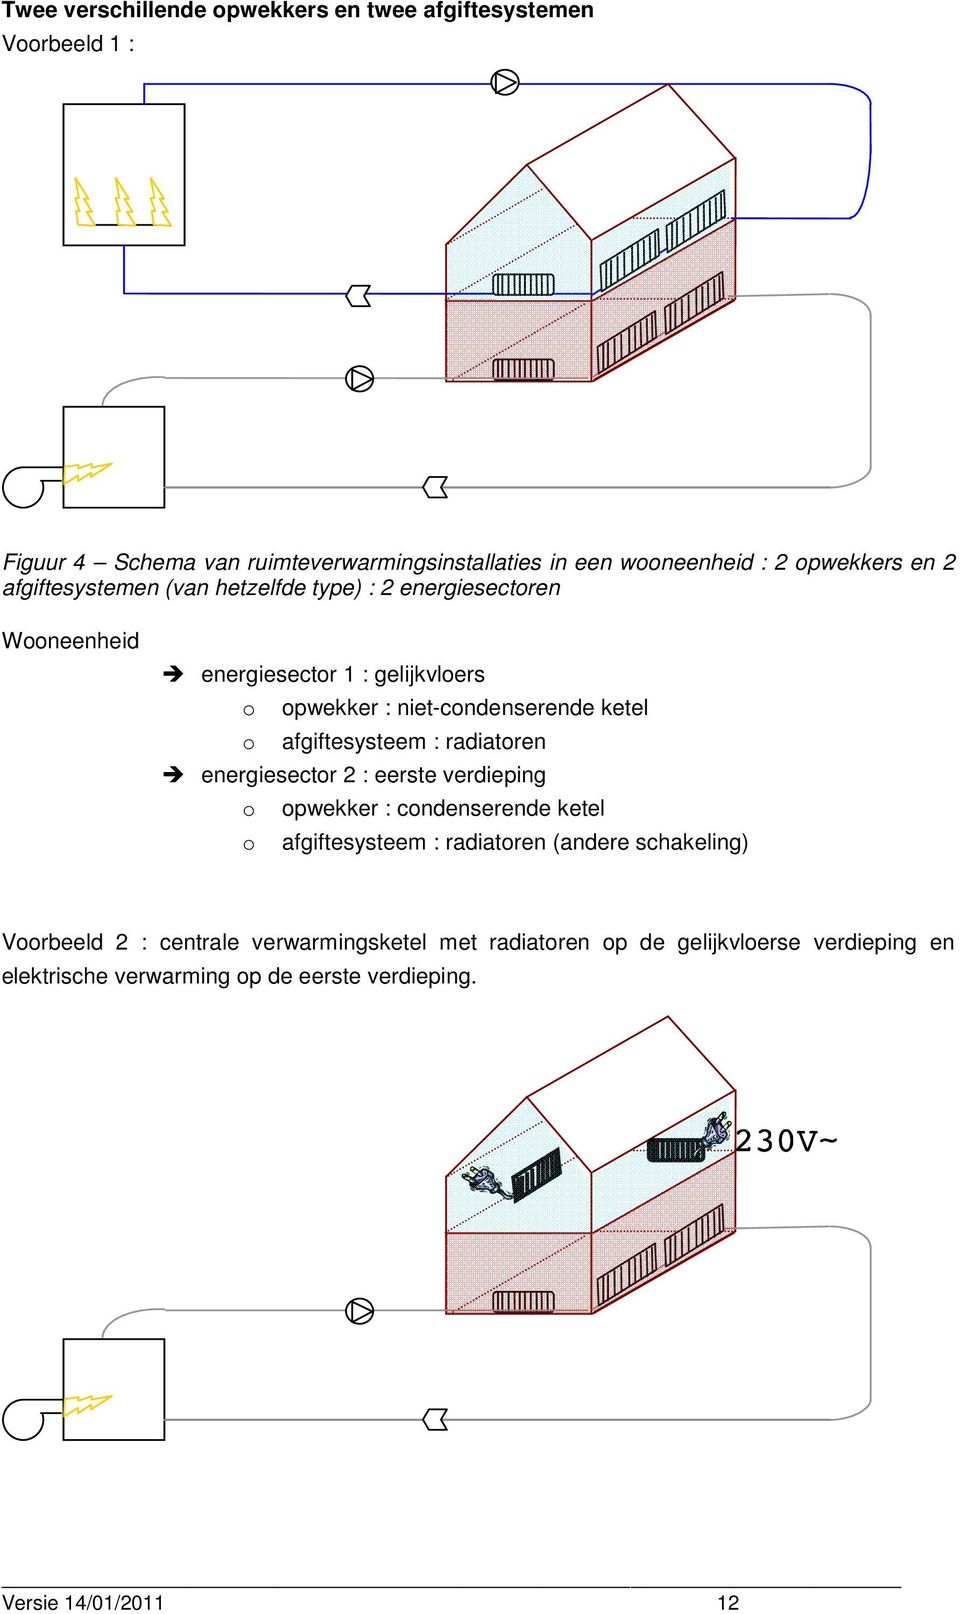 afgiftesysteem : radiatoren energiesector 2 : eerste verdieping o opwekker : condenserende ketel o afgiftesysteem : radiatoren (andere schakeling)